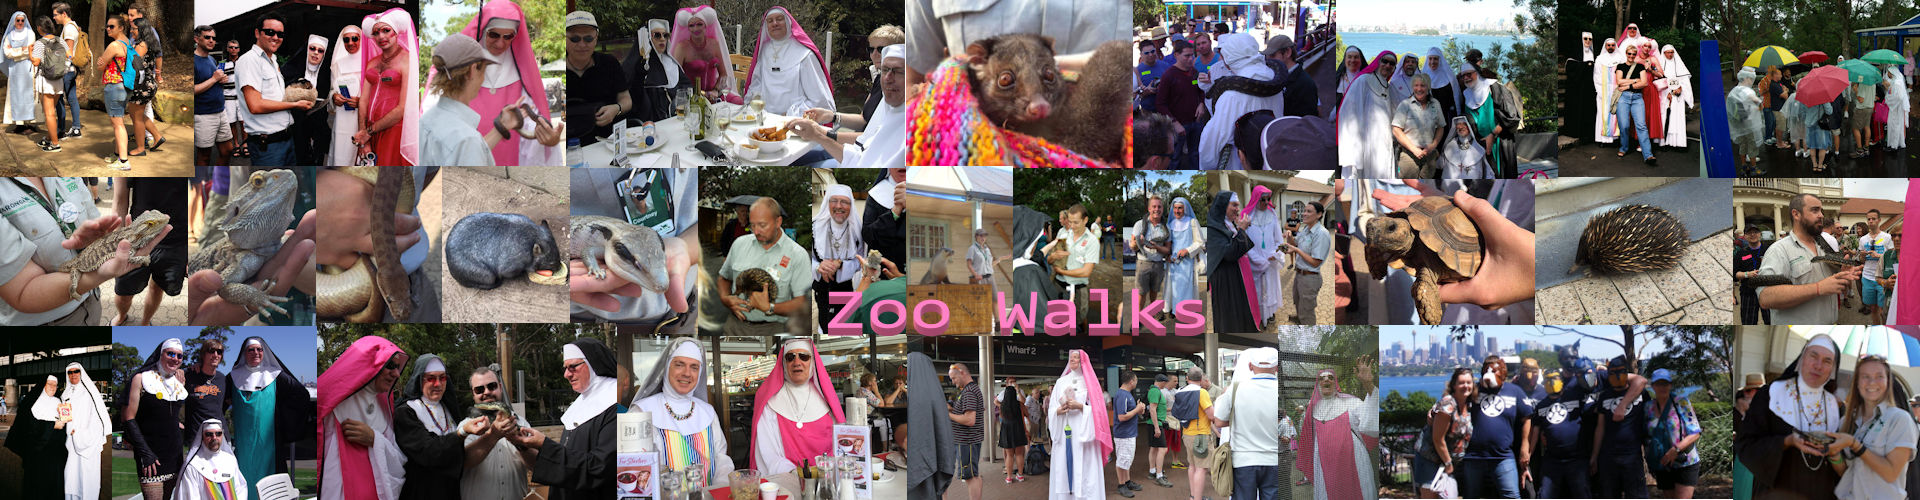 Zoo Walks